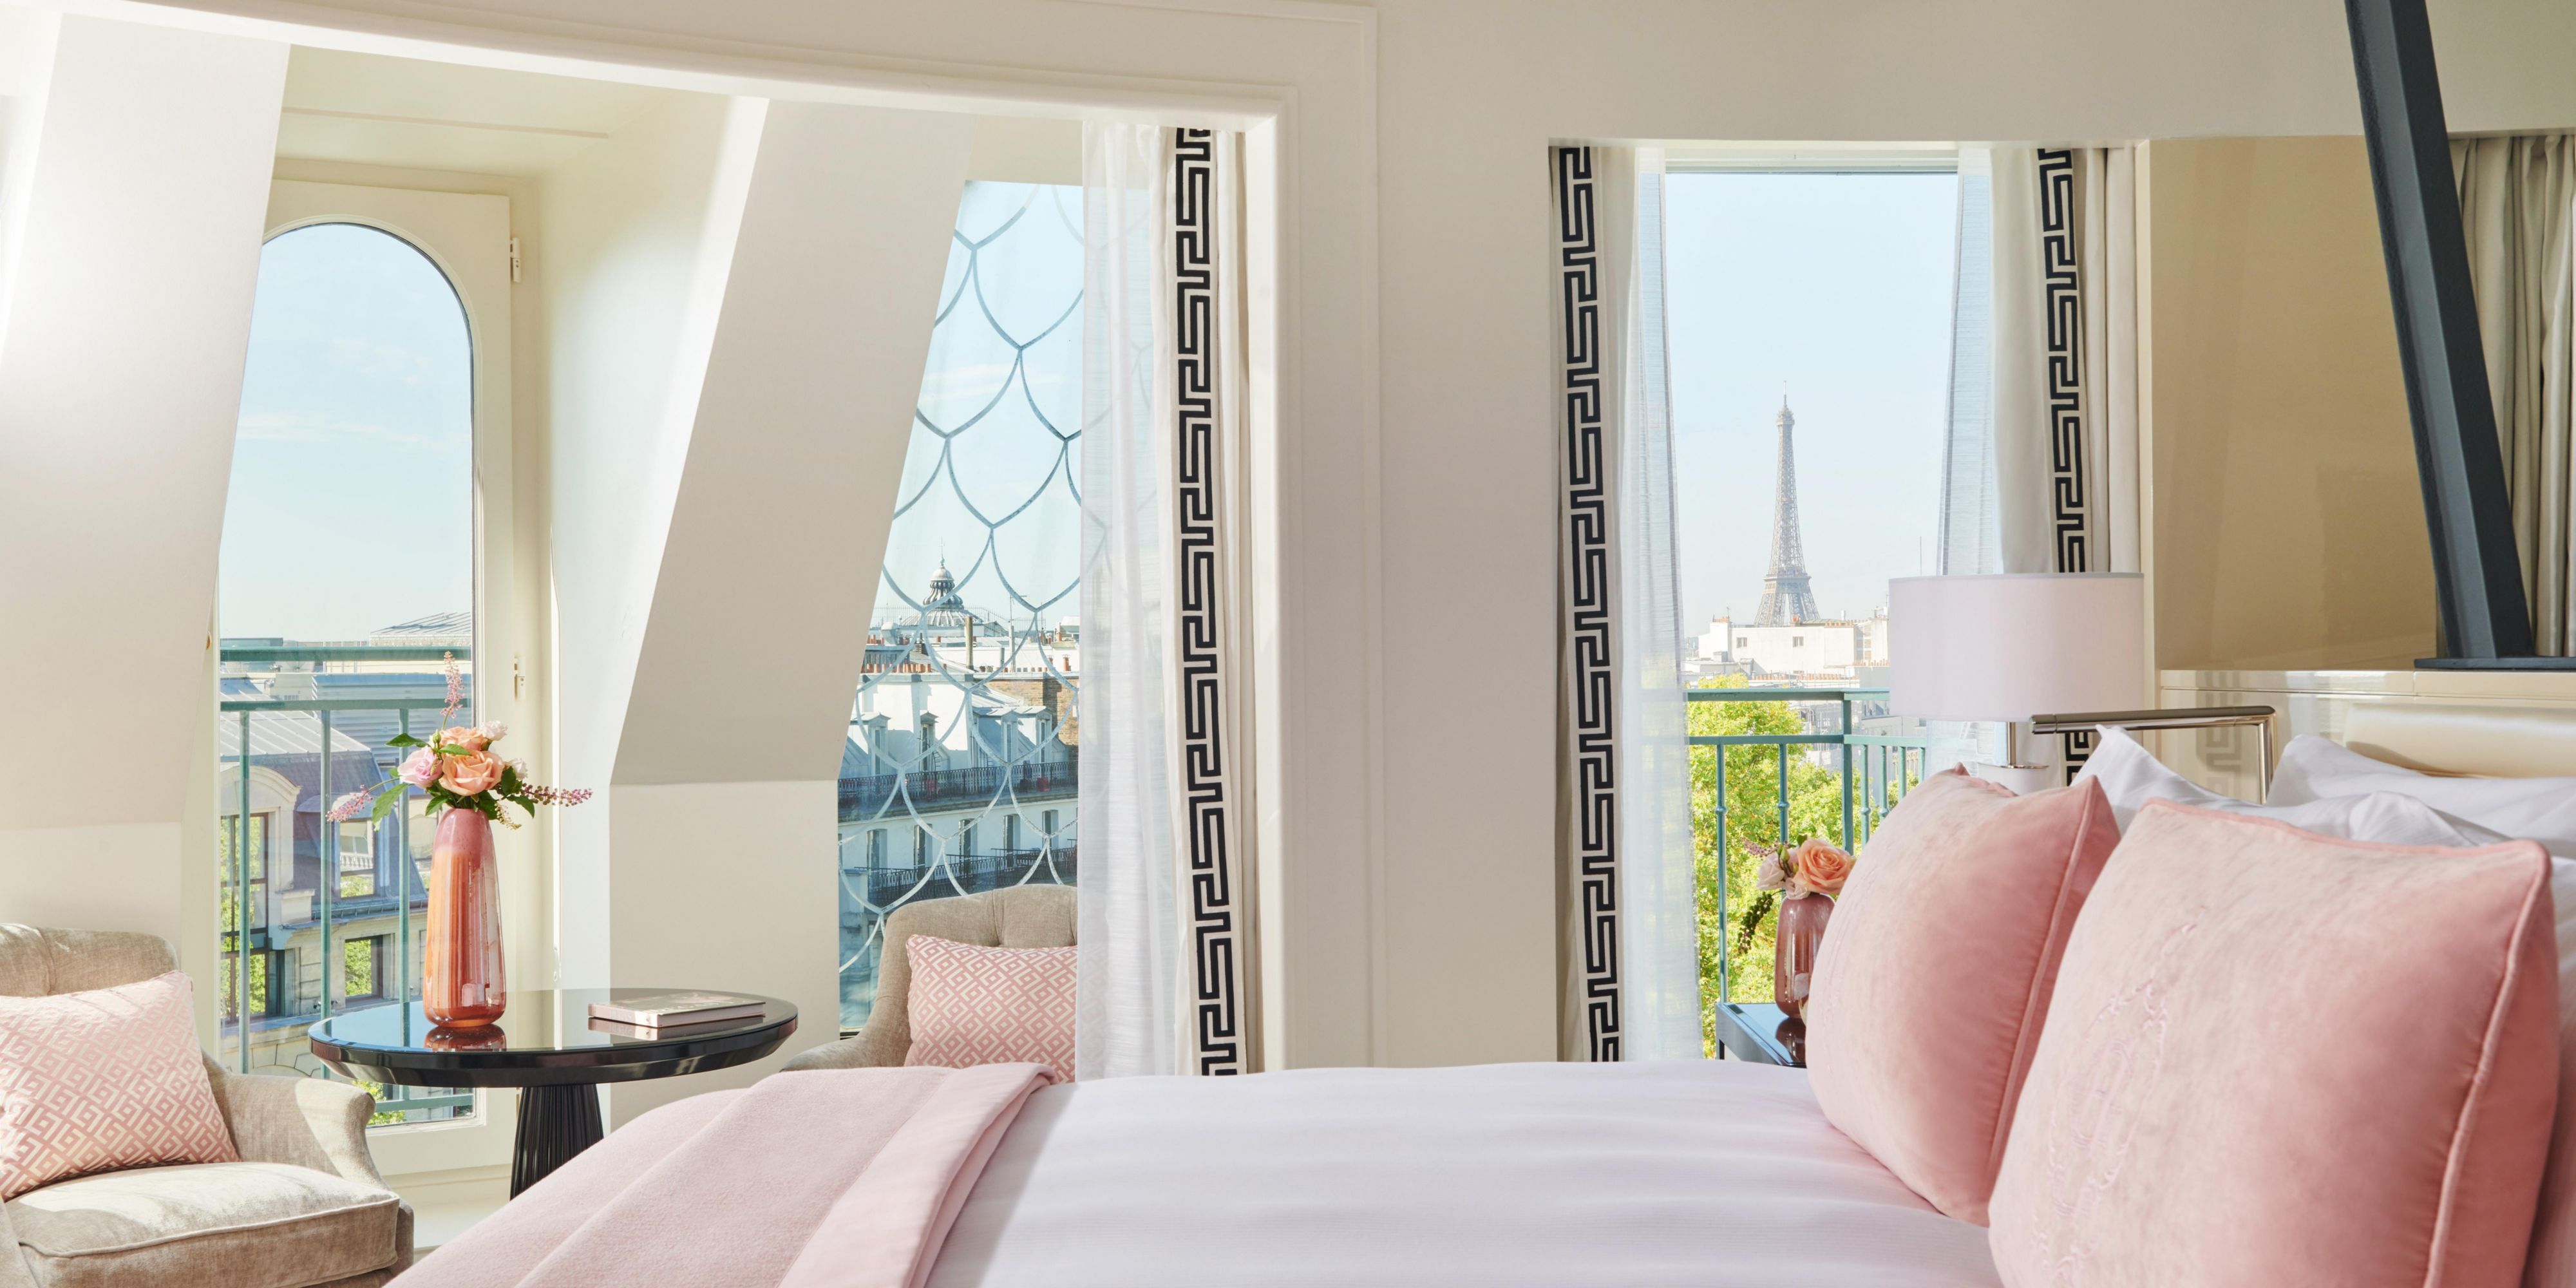 As Signature Suites são sobre conforto aconchegante e confidencialidade, oferecendo o máximo em luxo. Com uma vista panorâmica de tirar o fôlego sobre o telhado da Ópera Garnier ou da Torre Eiffel, eles são um refúgio de paz com um toque contemporâneo chique.